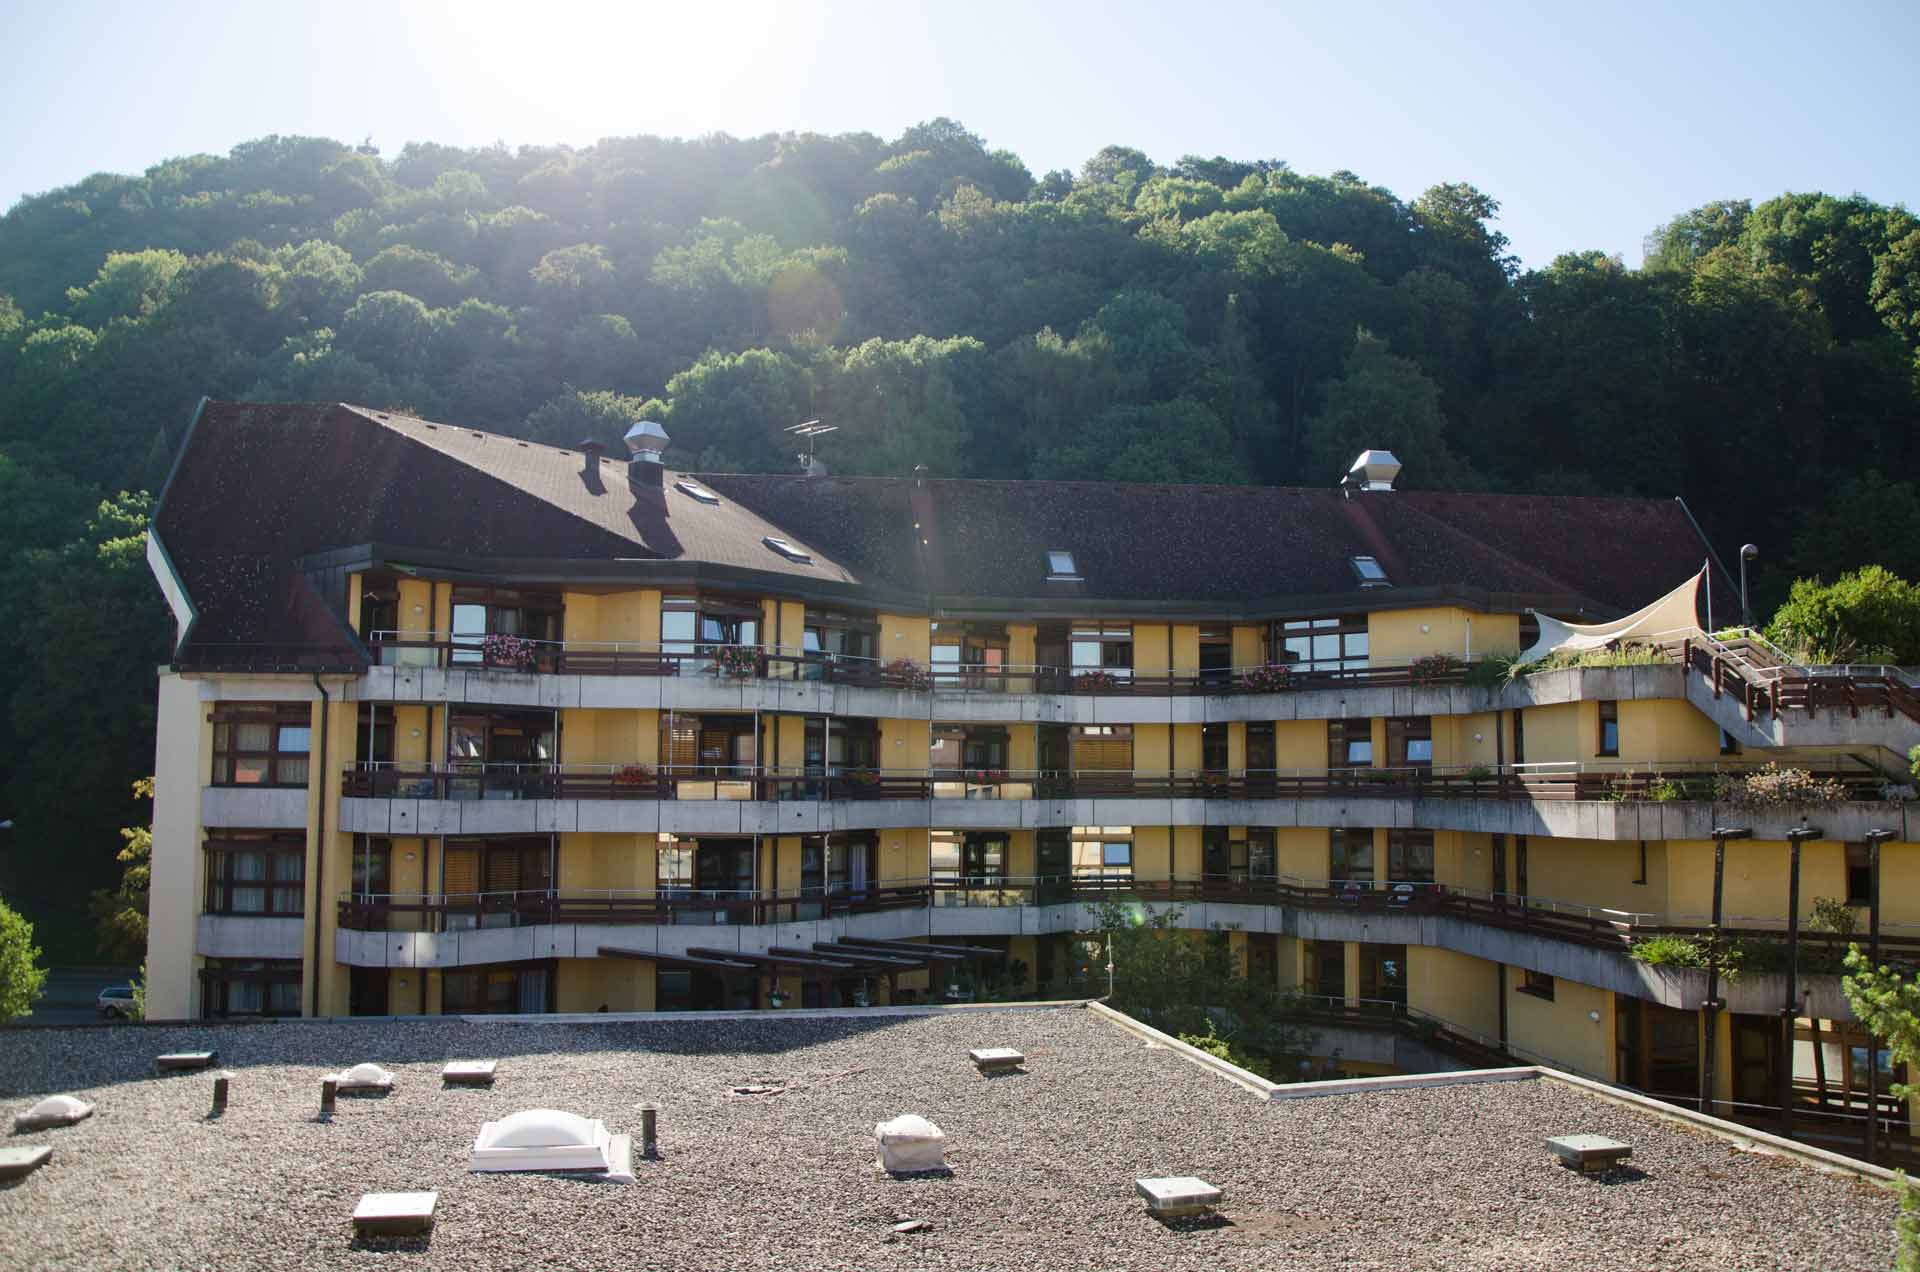 Die Pflegeeinrichtung Haus Schloßberg in Freiburg bietet Dauerpflege und Kurzzeitpflege mit hochqualitativer Versorgung und Betreuung an.